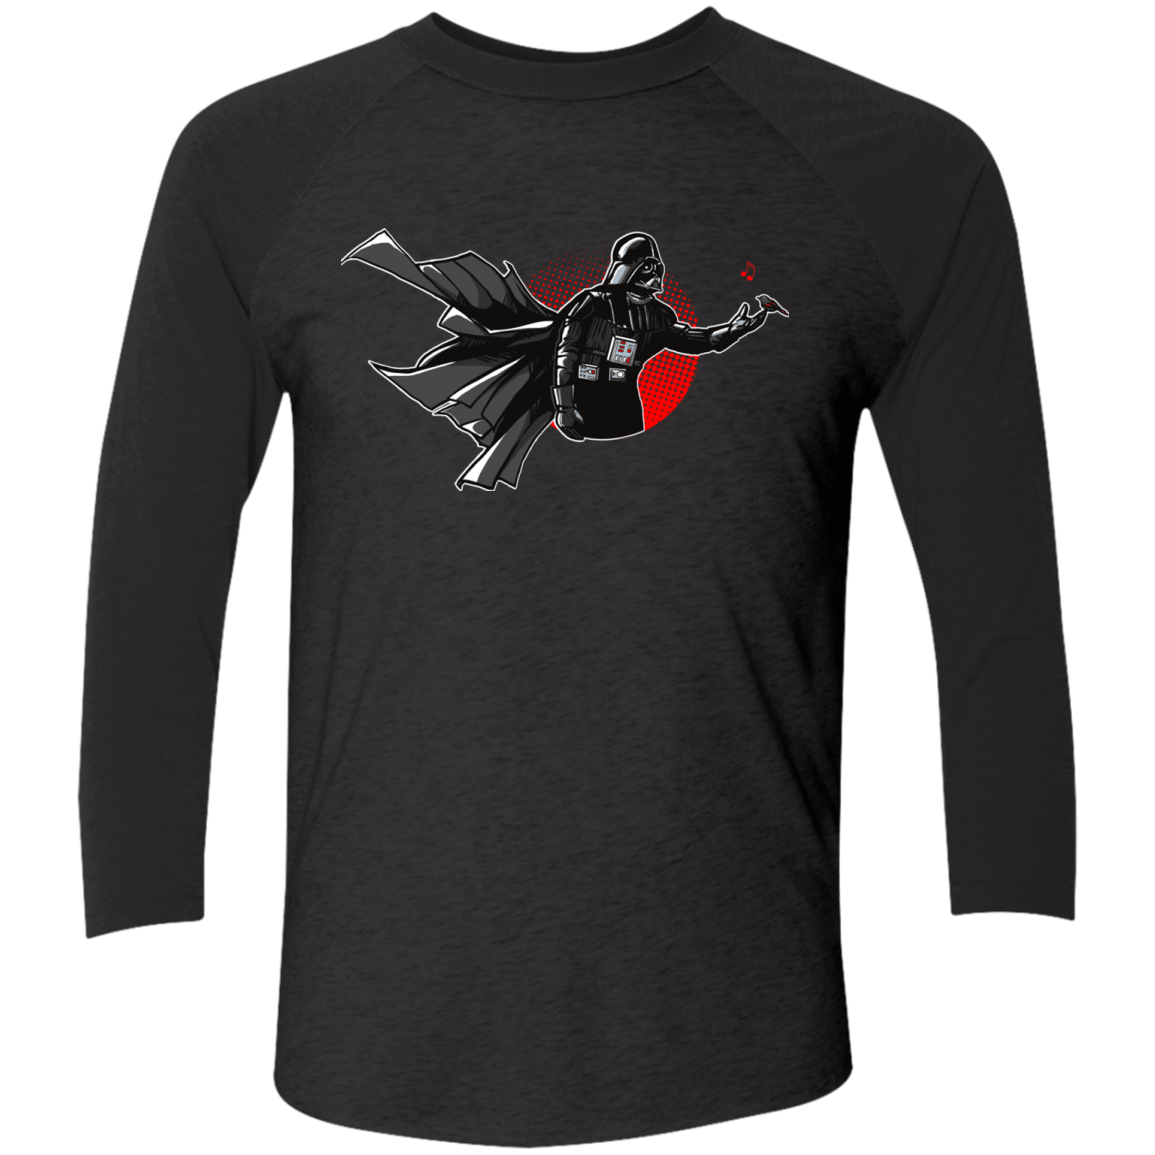 T-Shirts Vintage Black/Vintage Black / X-Small Dark Enforcer Men's Triblend 3/4 Sleeve